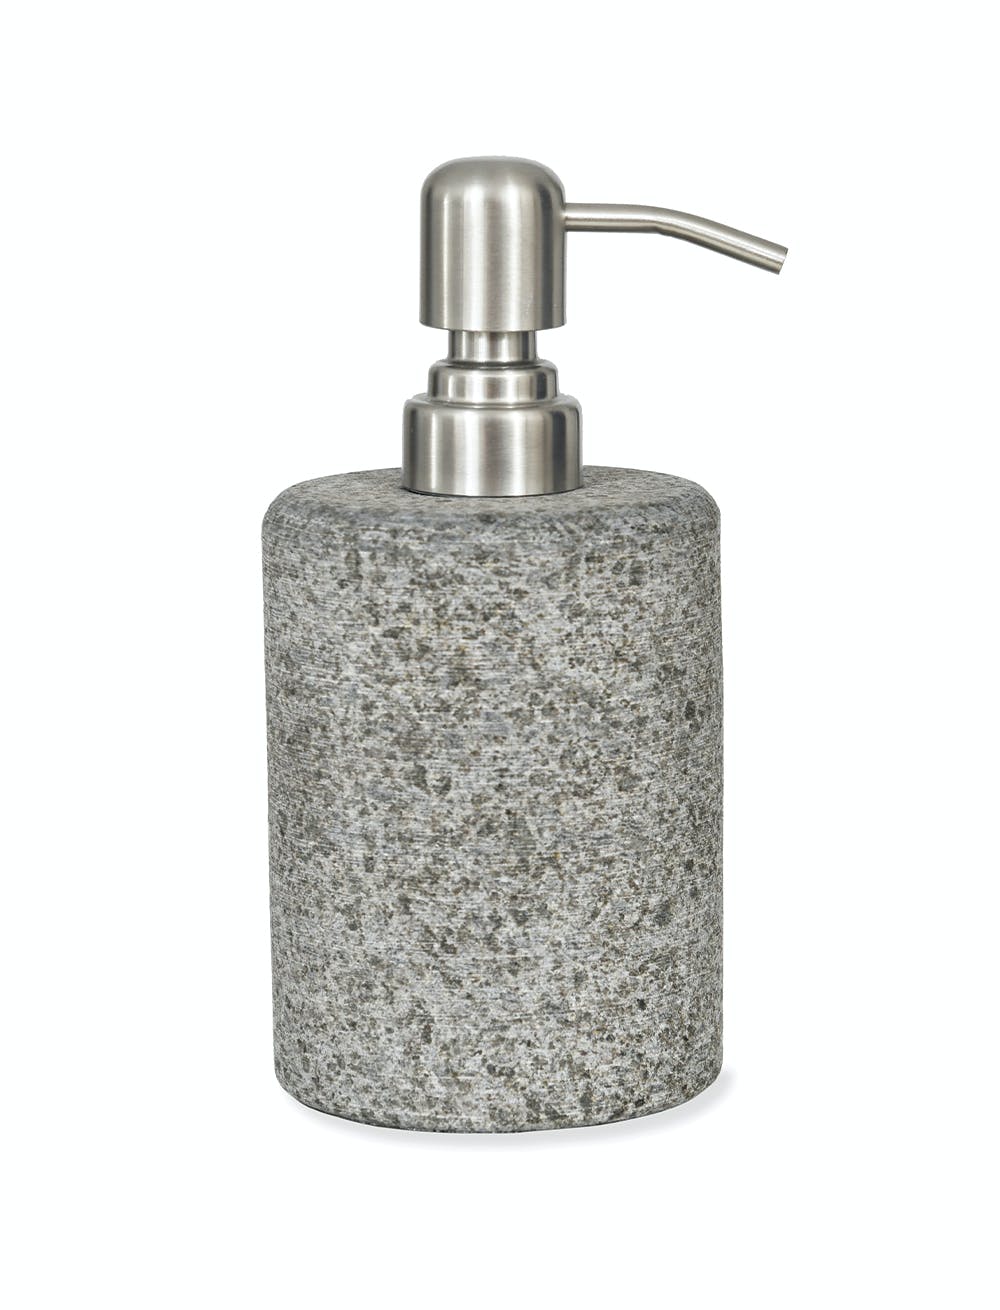 Adelphi Soap Dispenser